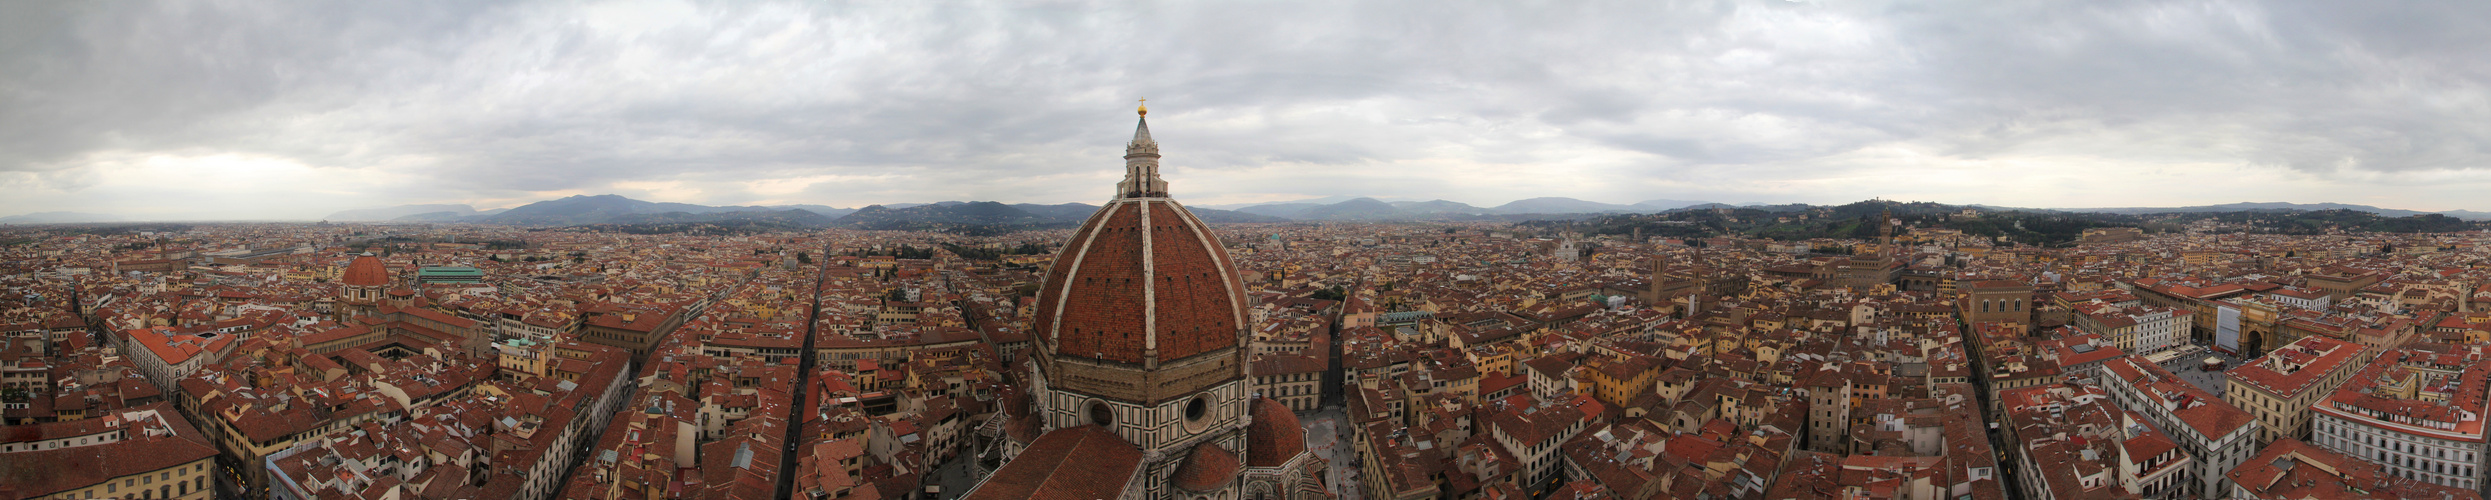 Florenzpanorama vom Campanile aus gesehen